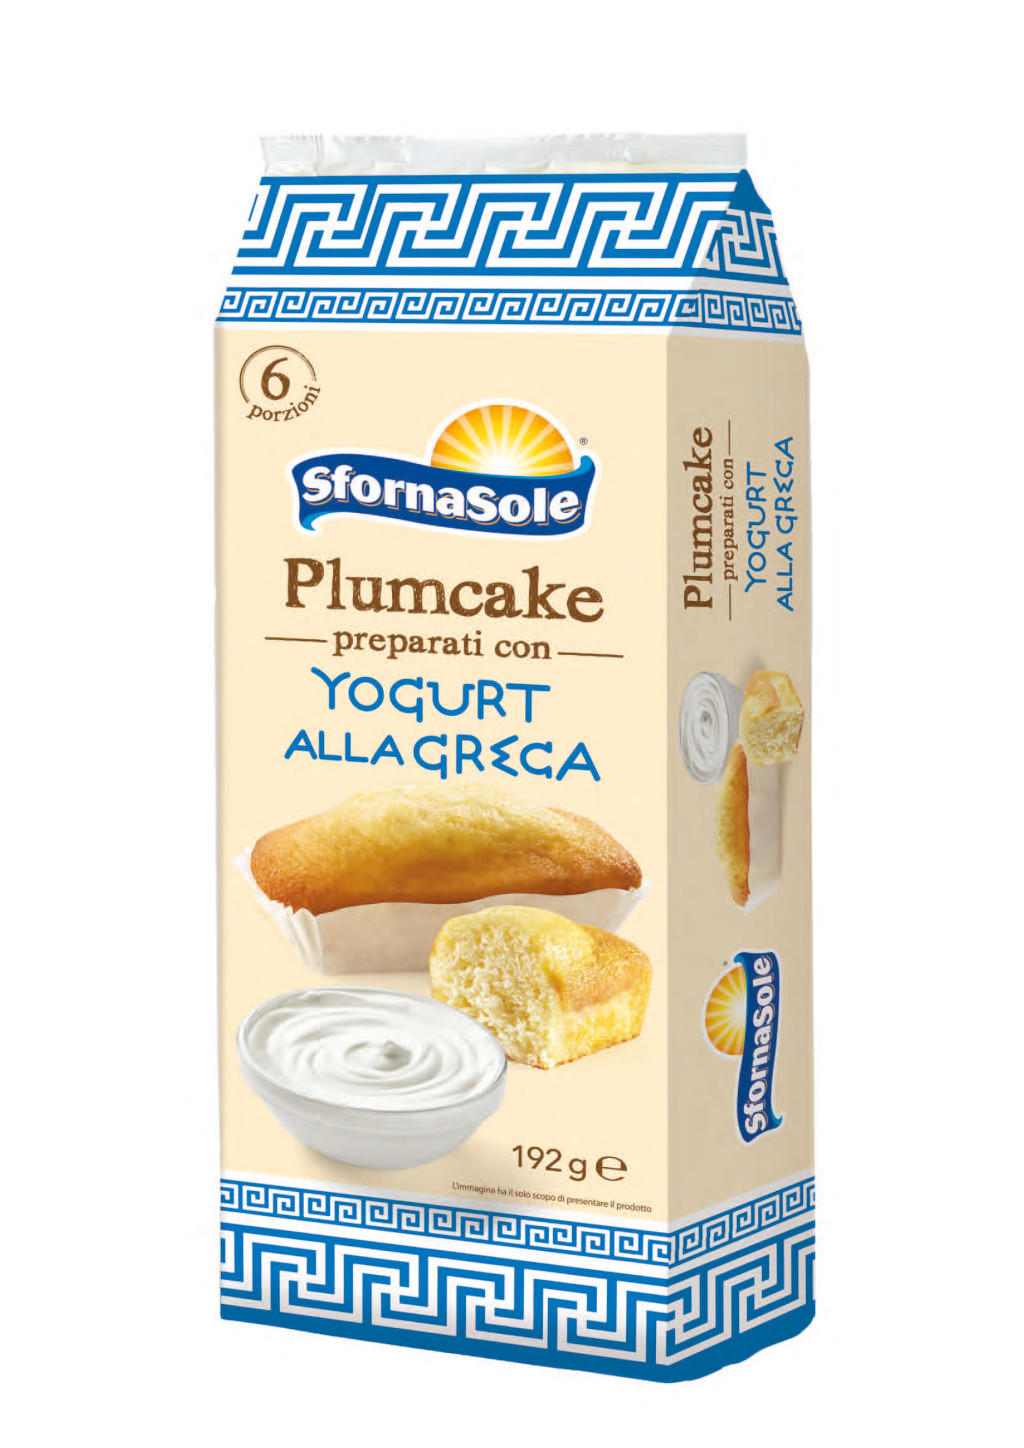 SFORNASOLE - Plumcake preparati con yogurt alla greca 192 g.